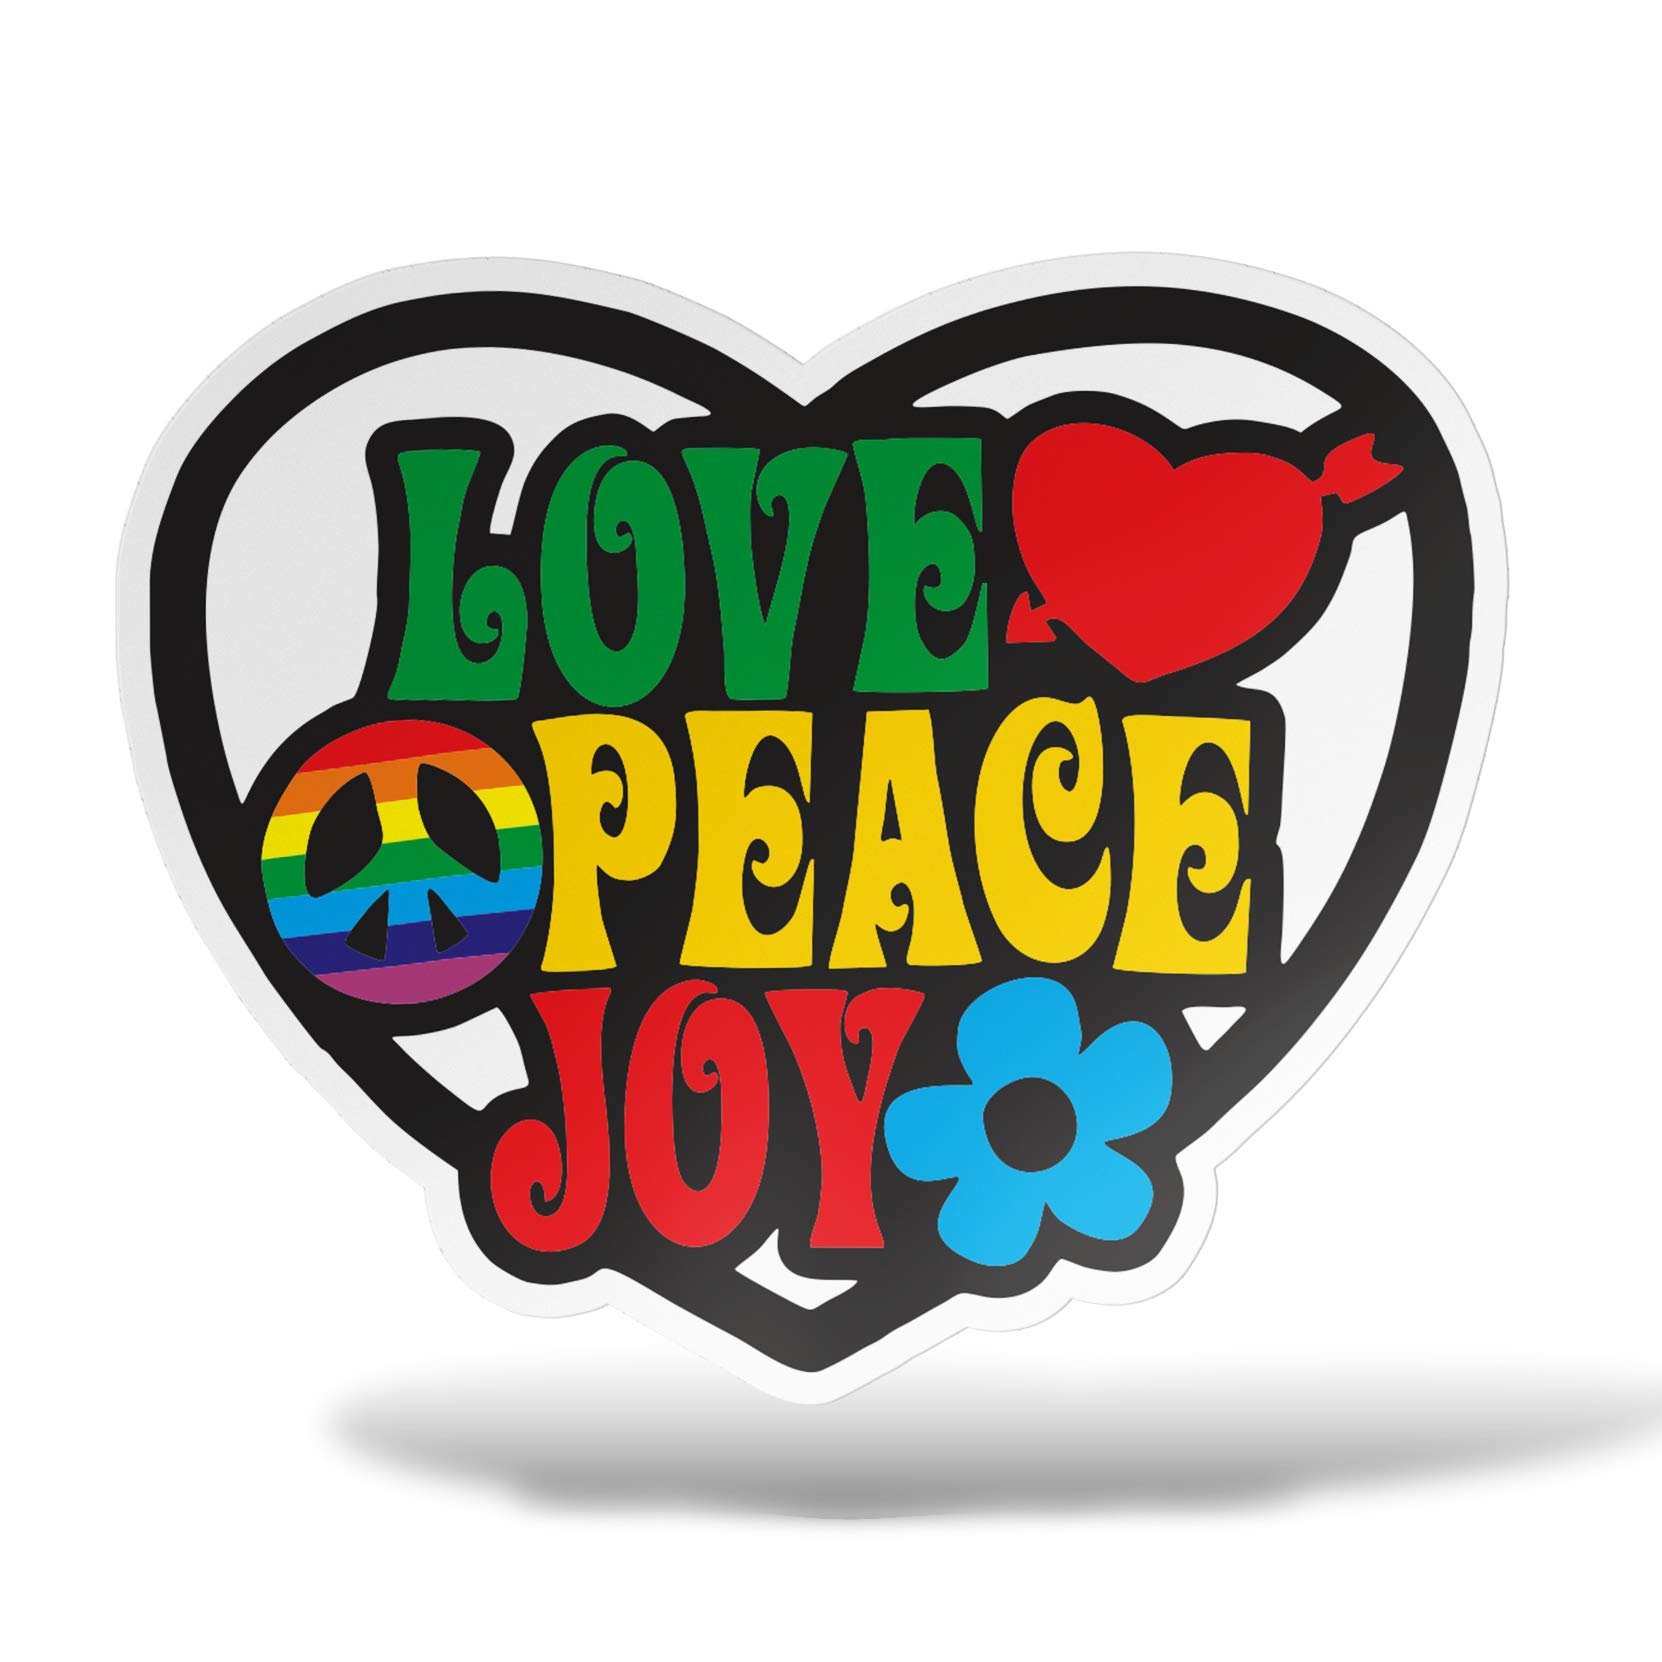 erreinge Aufkleber Peace Love Joy Flower Power Reggae Shaped Adhesive PVC für Abziehbild Tapete Auto Moto Helm Camper Laptop - 20 cm von erreinge